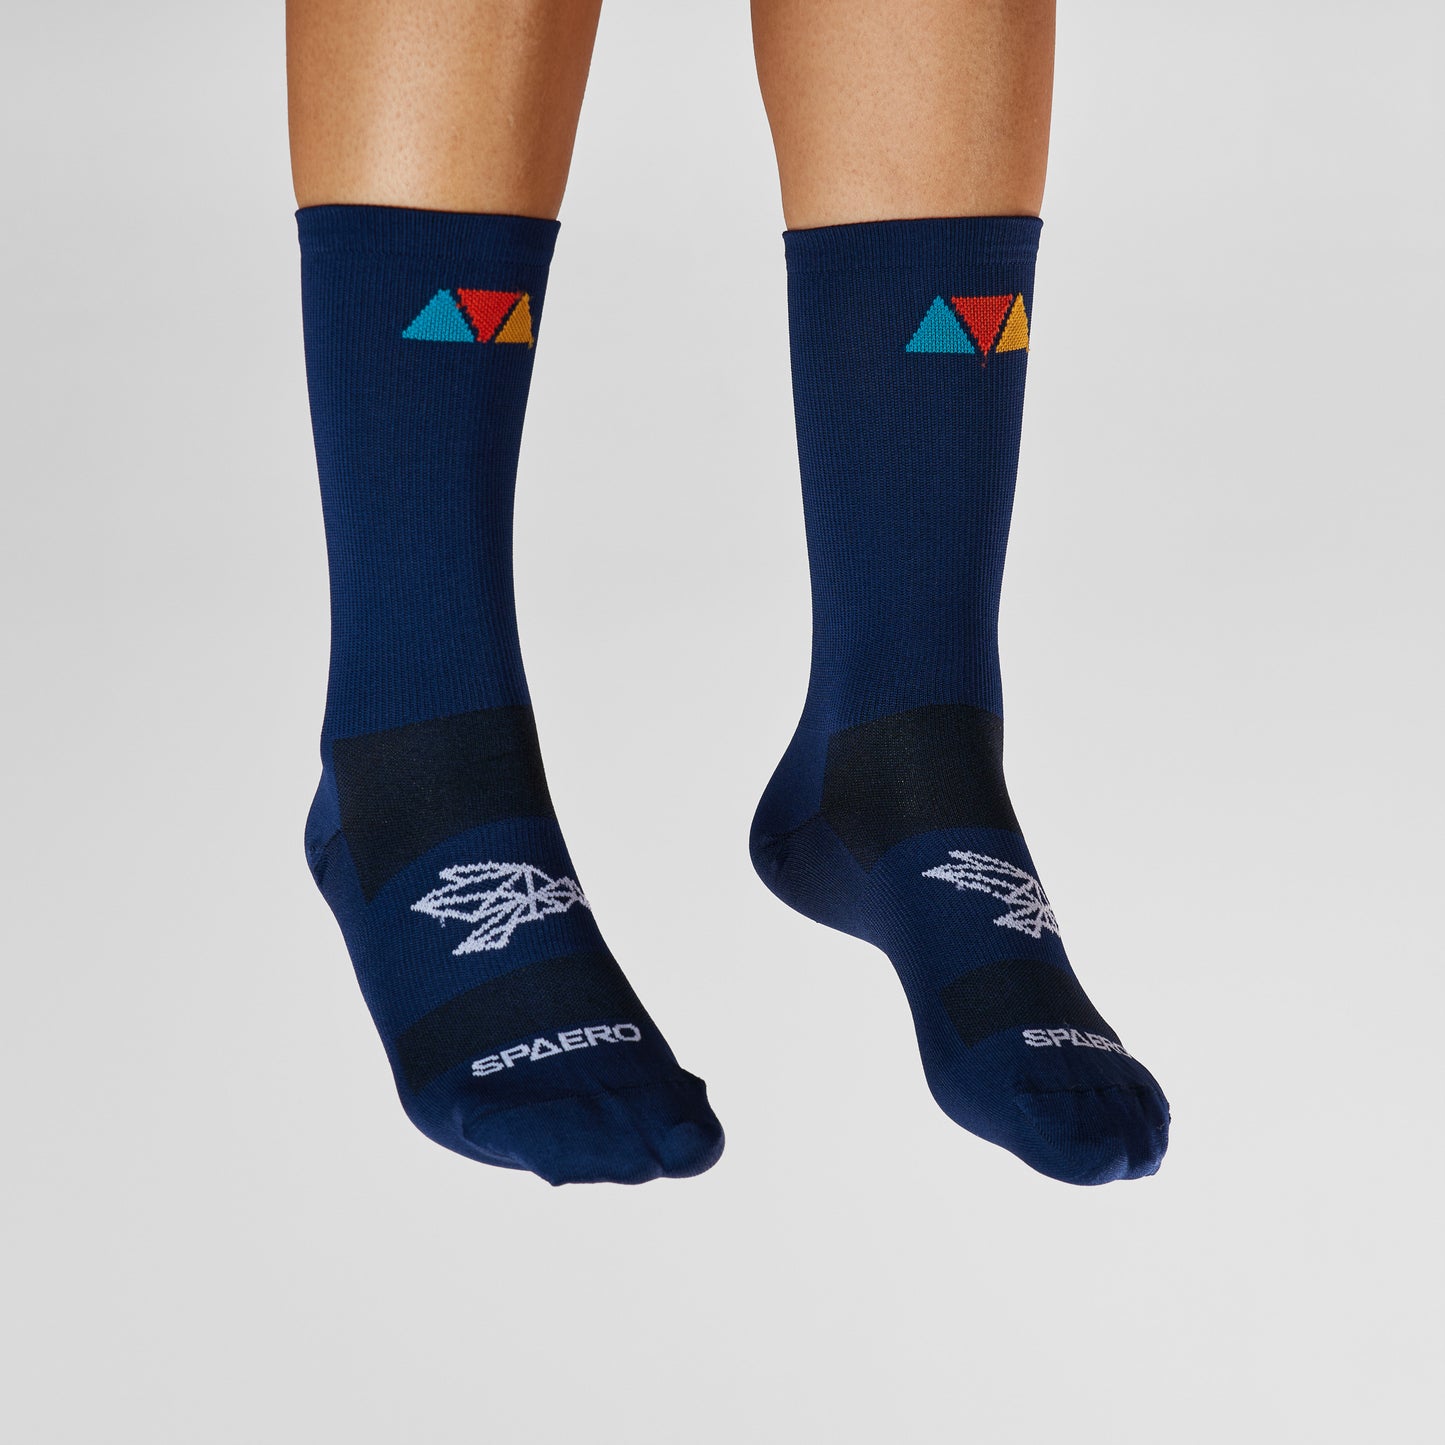 SPAERO Signature Socks